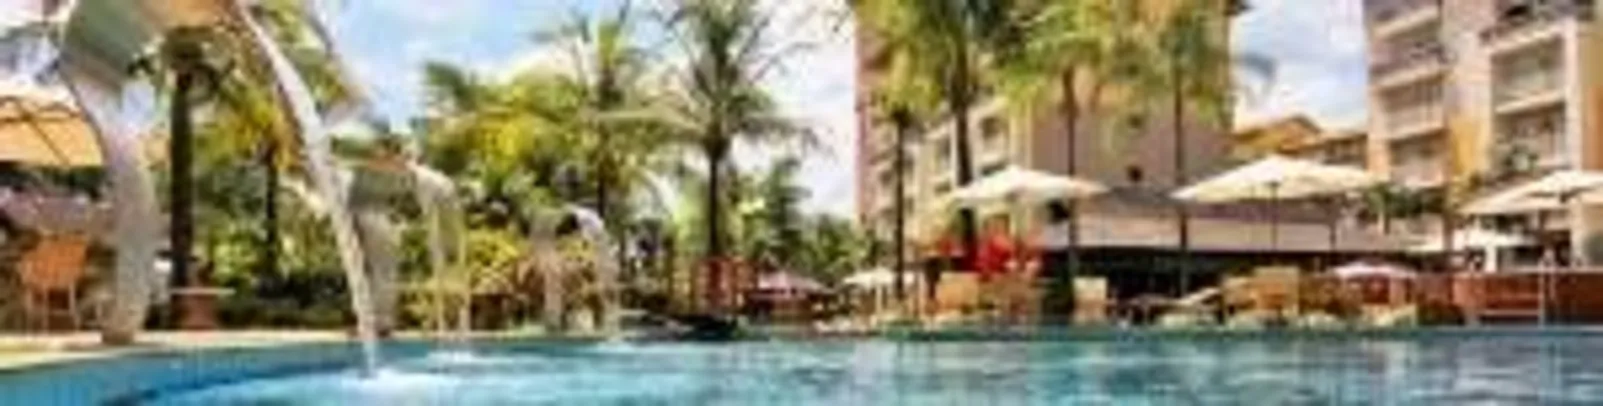 [Hotel Urbano] Thermas de Olímpia Resort 3 dias para 2 pessoas por R$ 353 